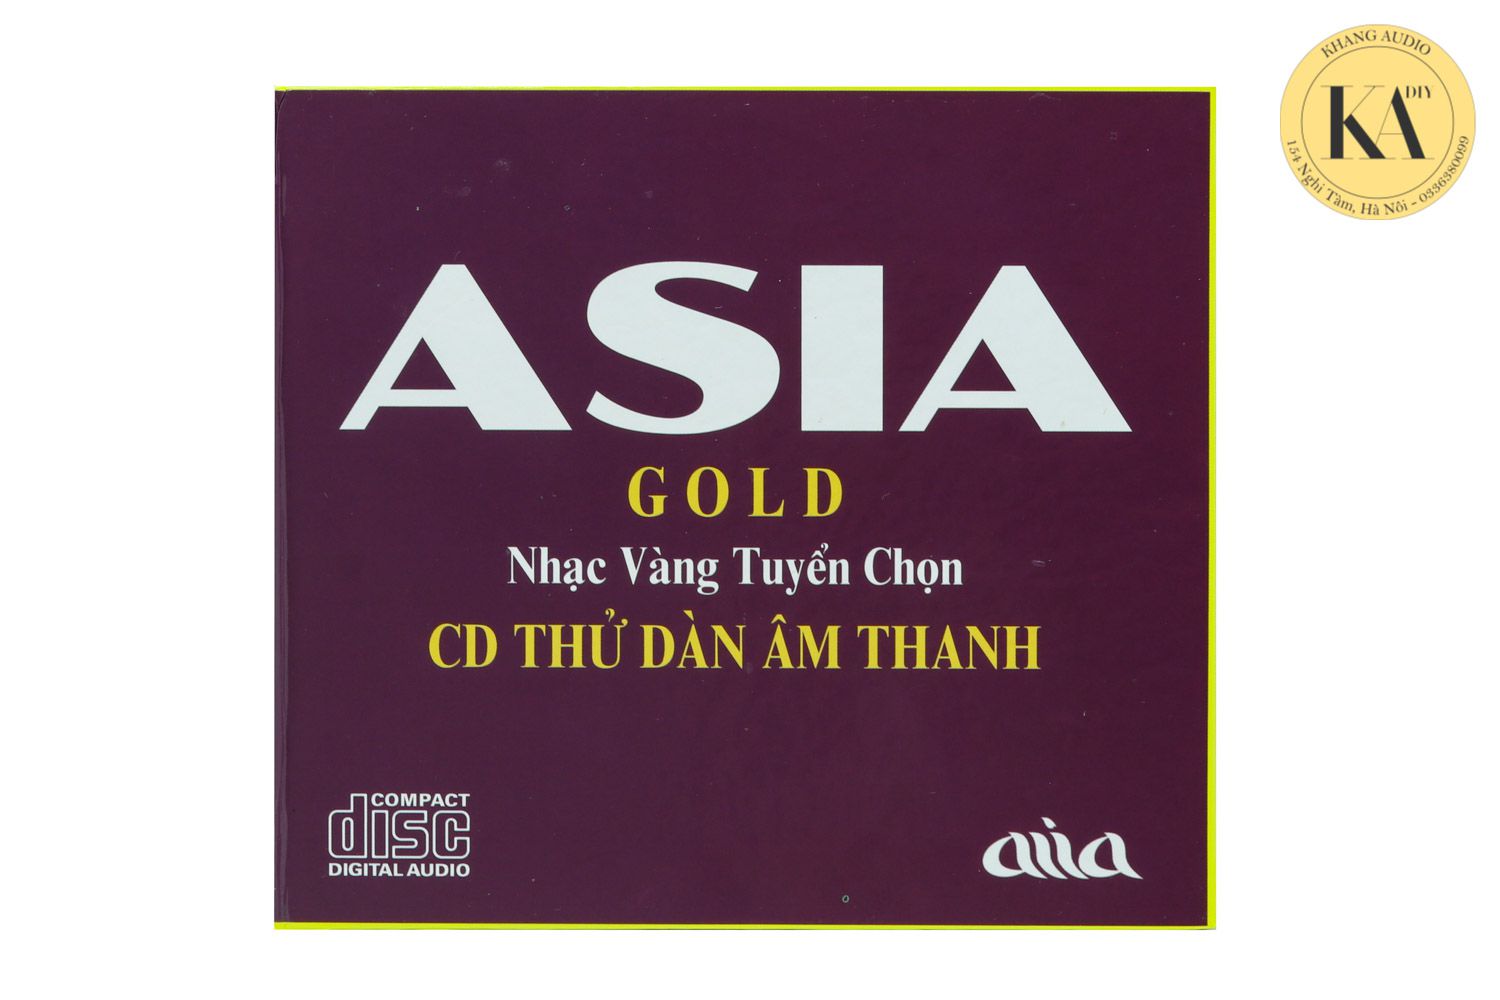 Combo CD Nhạc Vàng Nhạc Tình Tuyển Chọn Test Dàn Khang Audio 0336380099